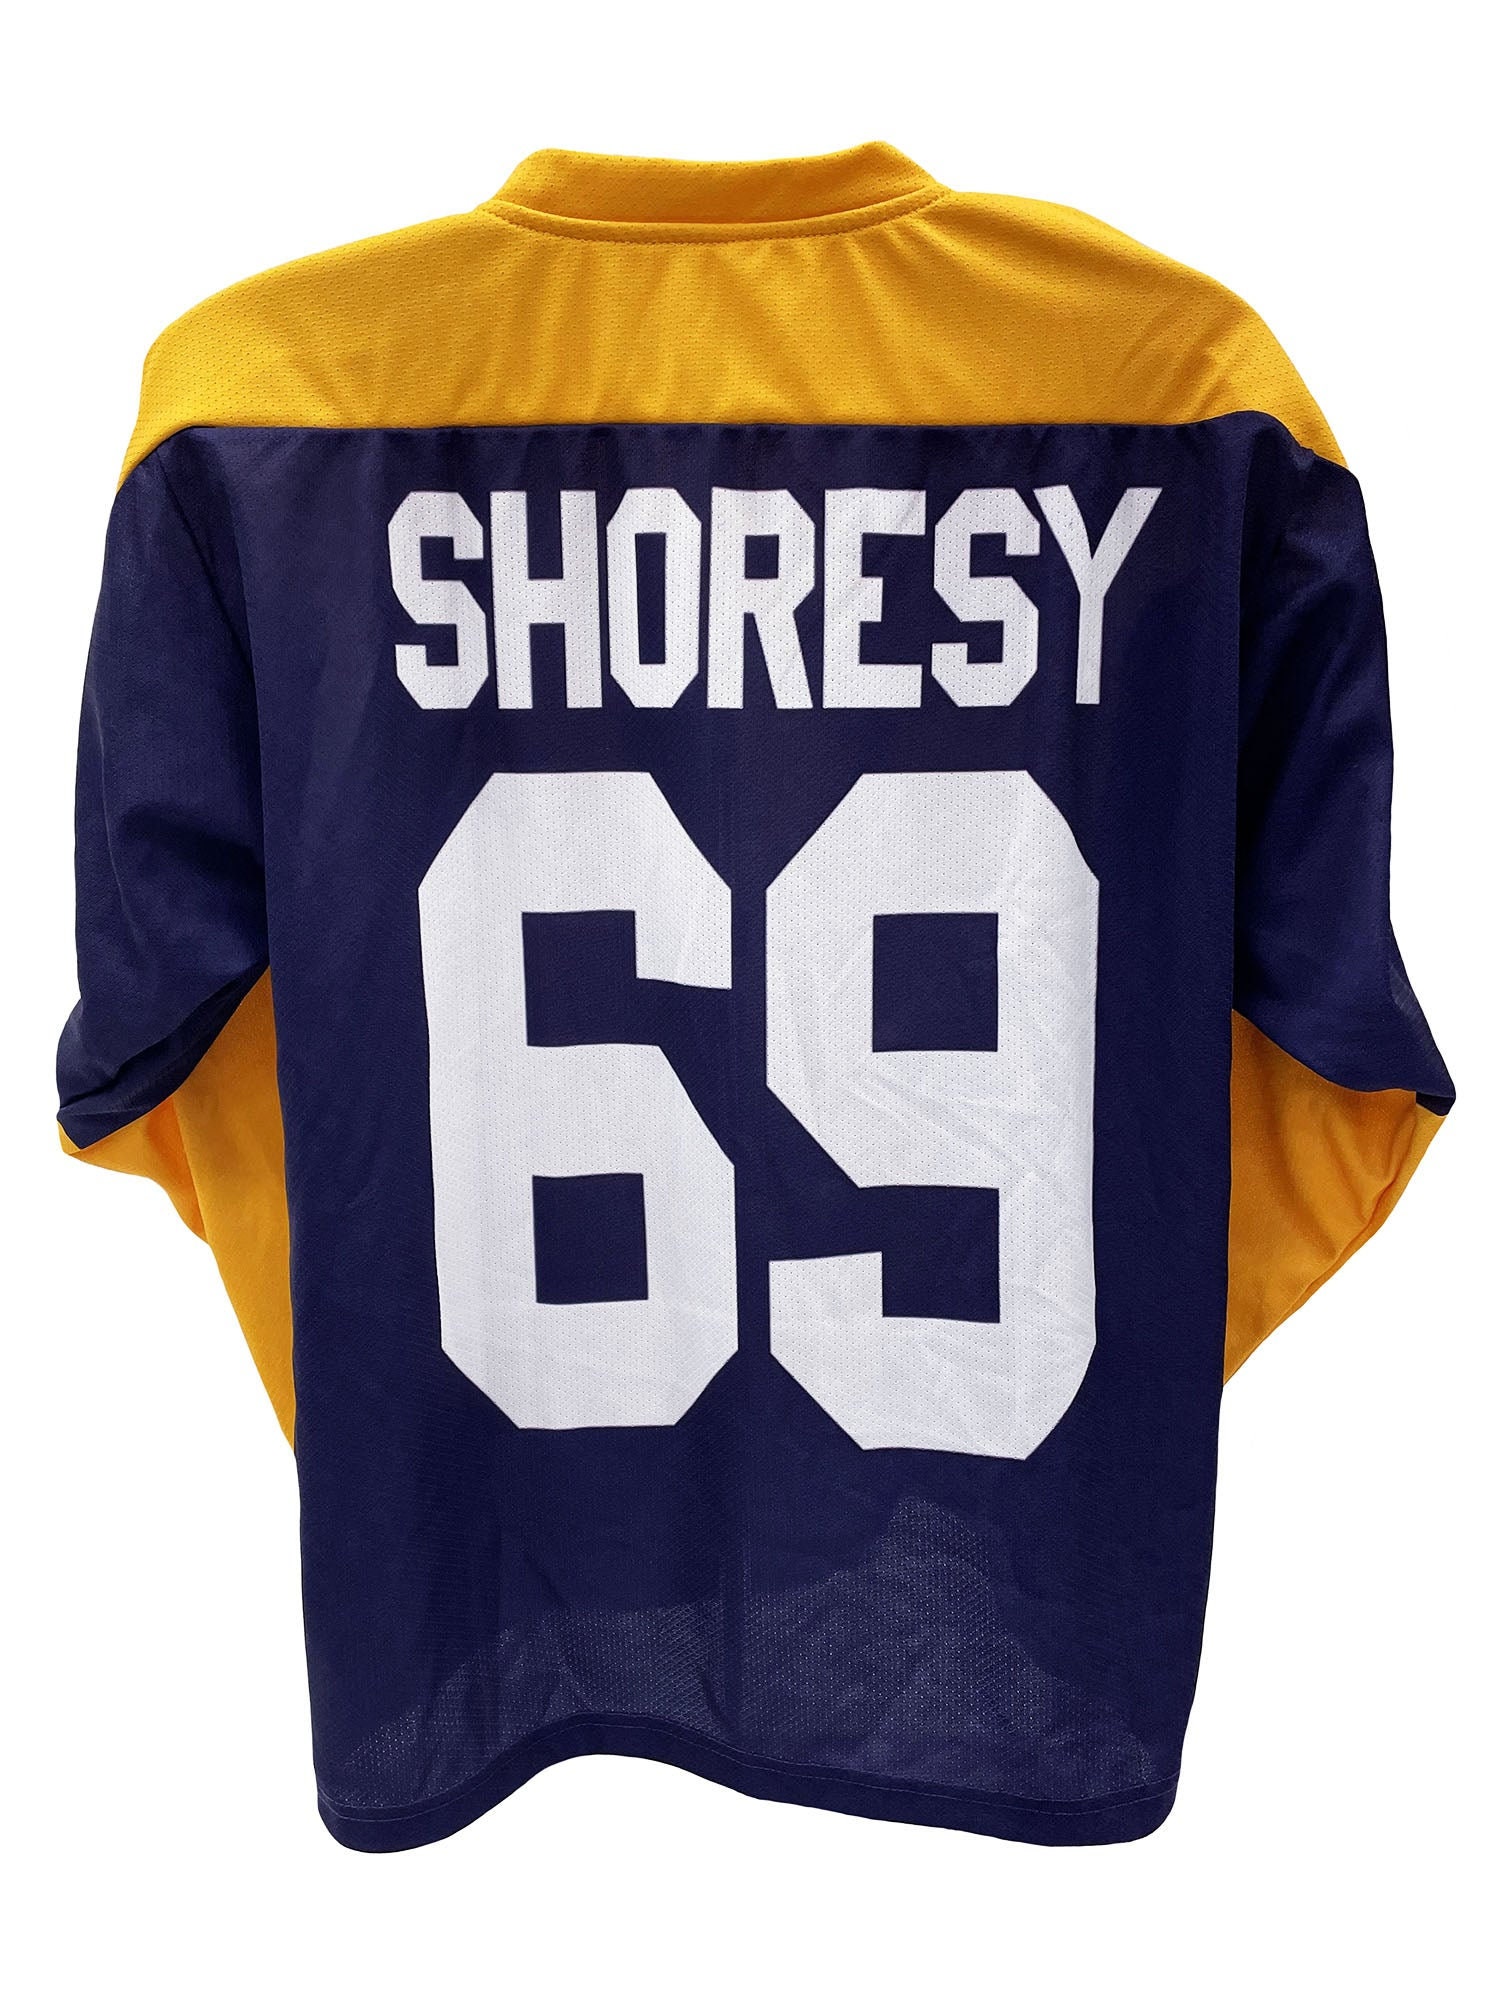 Shore (Shoresy) - Sudbury Bulldogs, Hockey Jersey #69 Sticker for